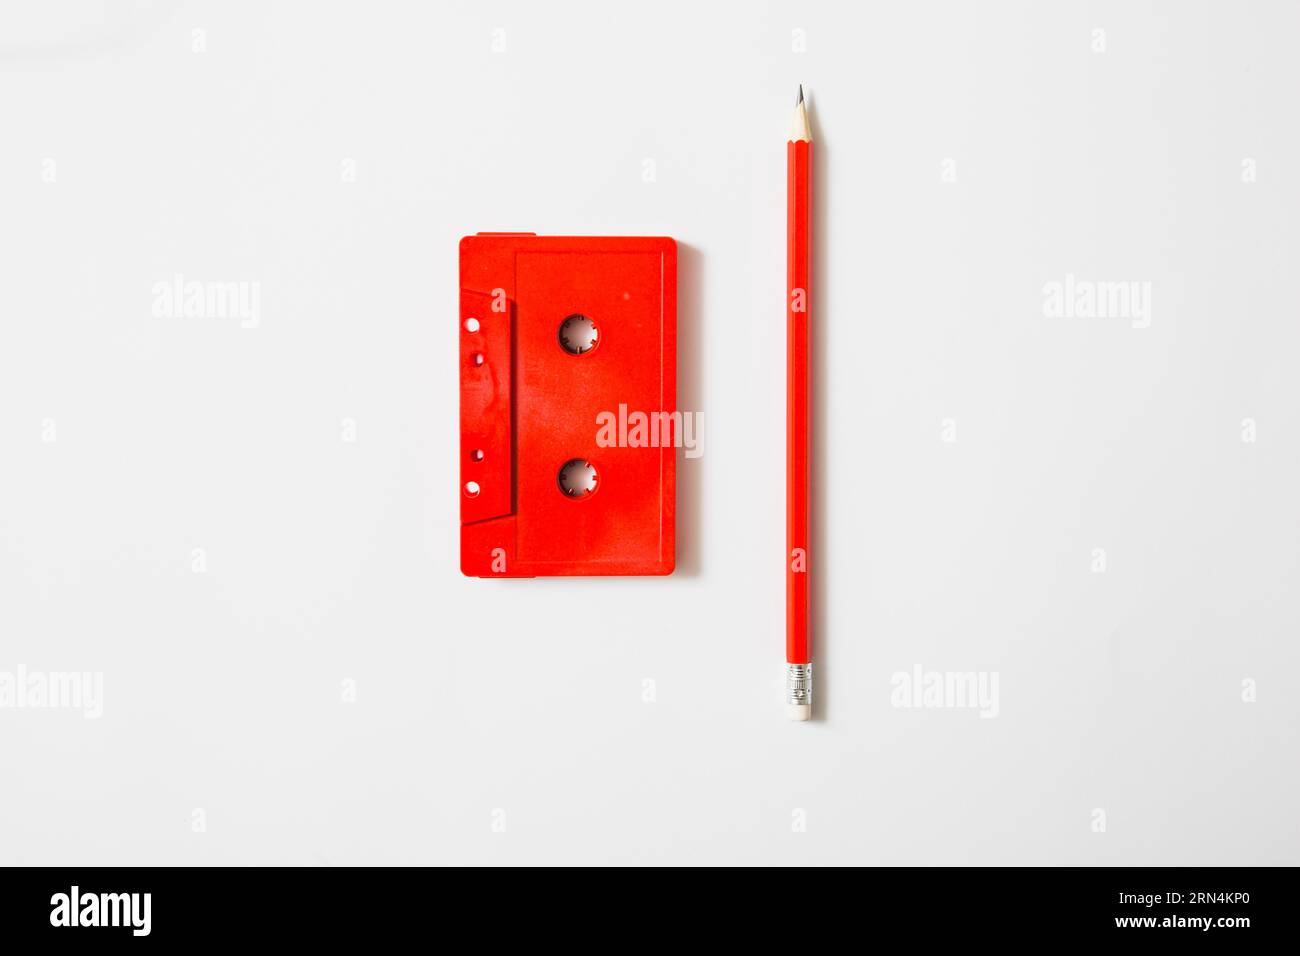 Ruban cassette rouge crayon fond blanc Banque D'Images